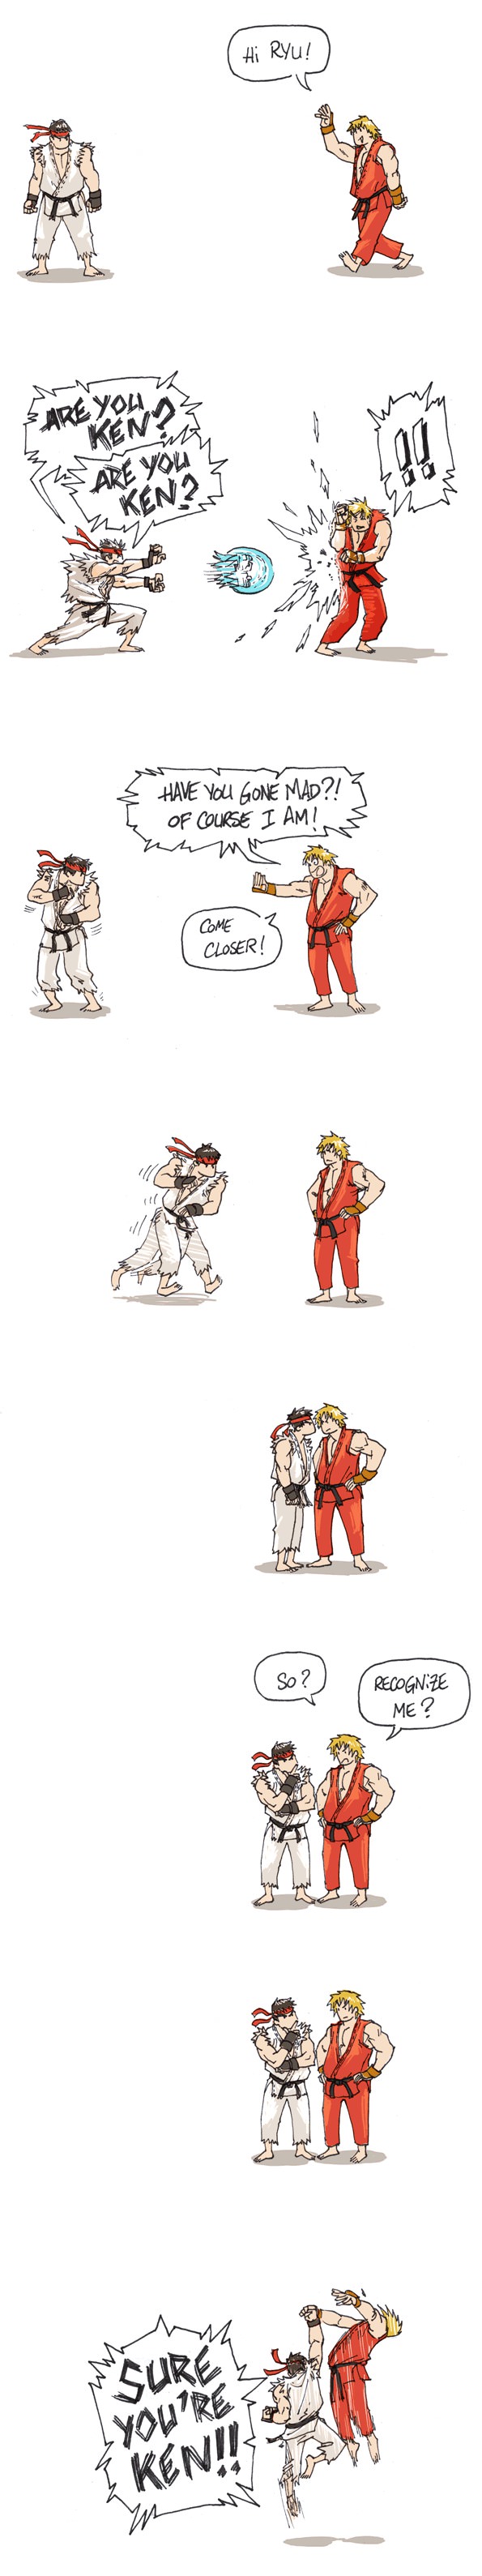 Hài hước: Tuyệt chiêu của Ryu phiên bản... tiếng Anh